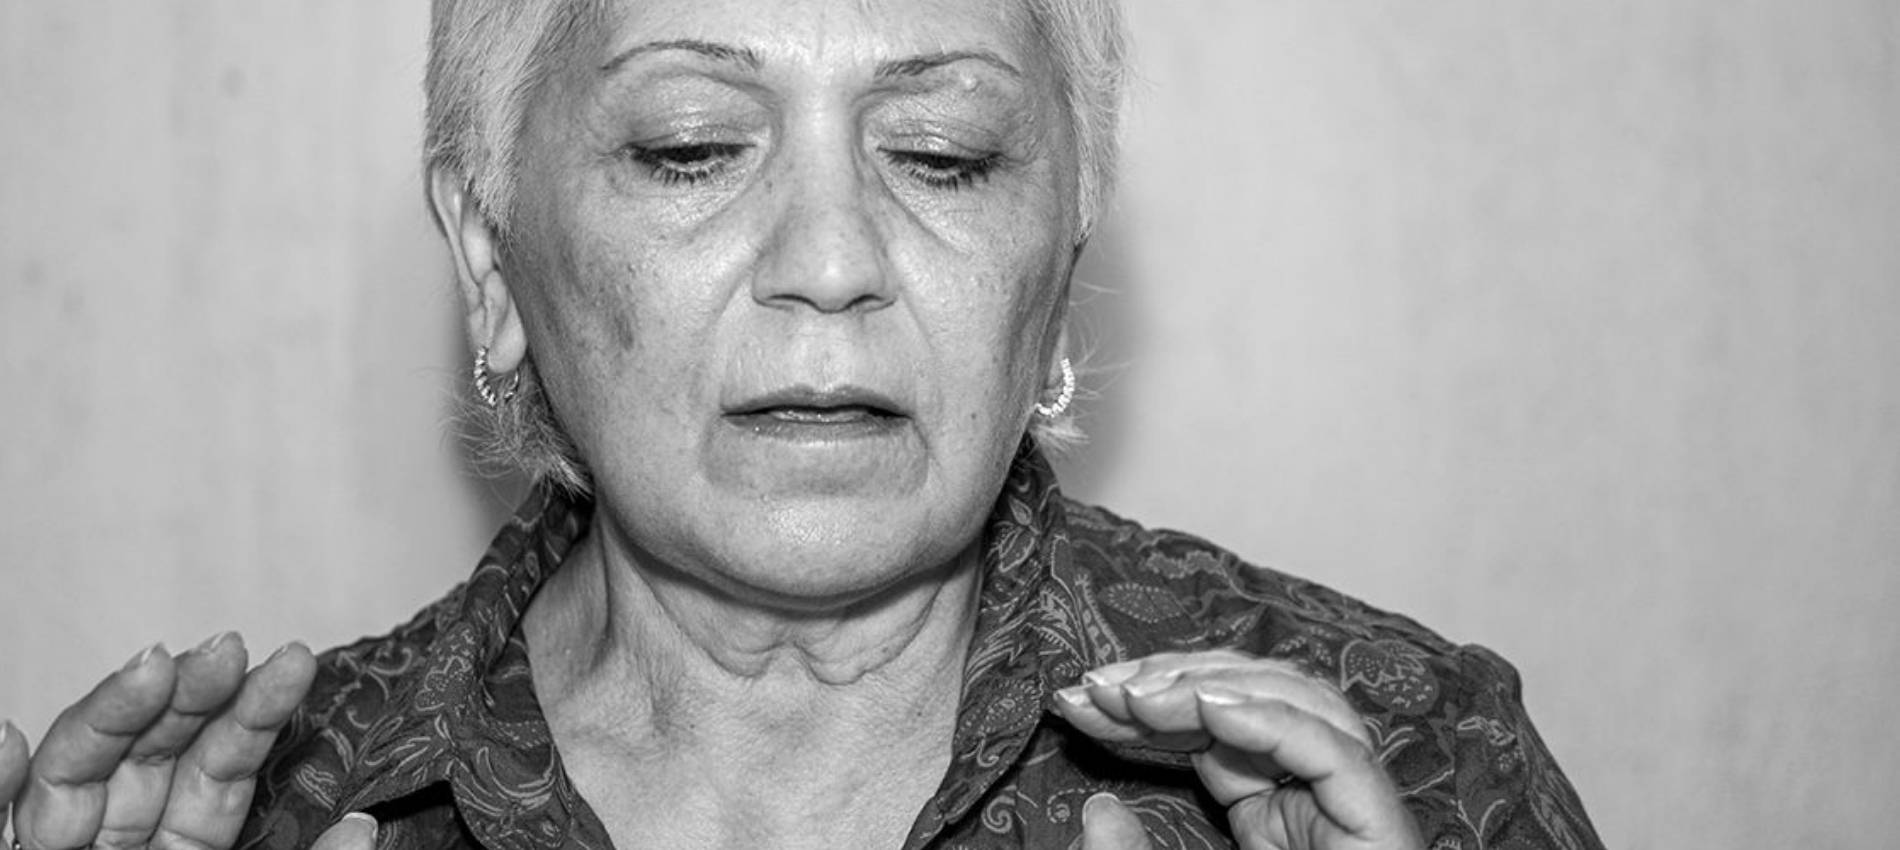 Galina, 60, Ukrainische Flüchtlinge erzählen vom Krieg